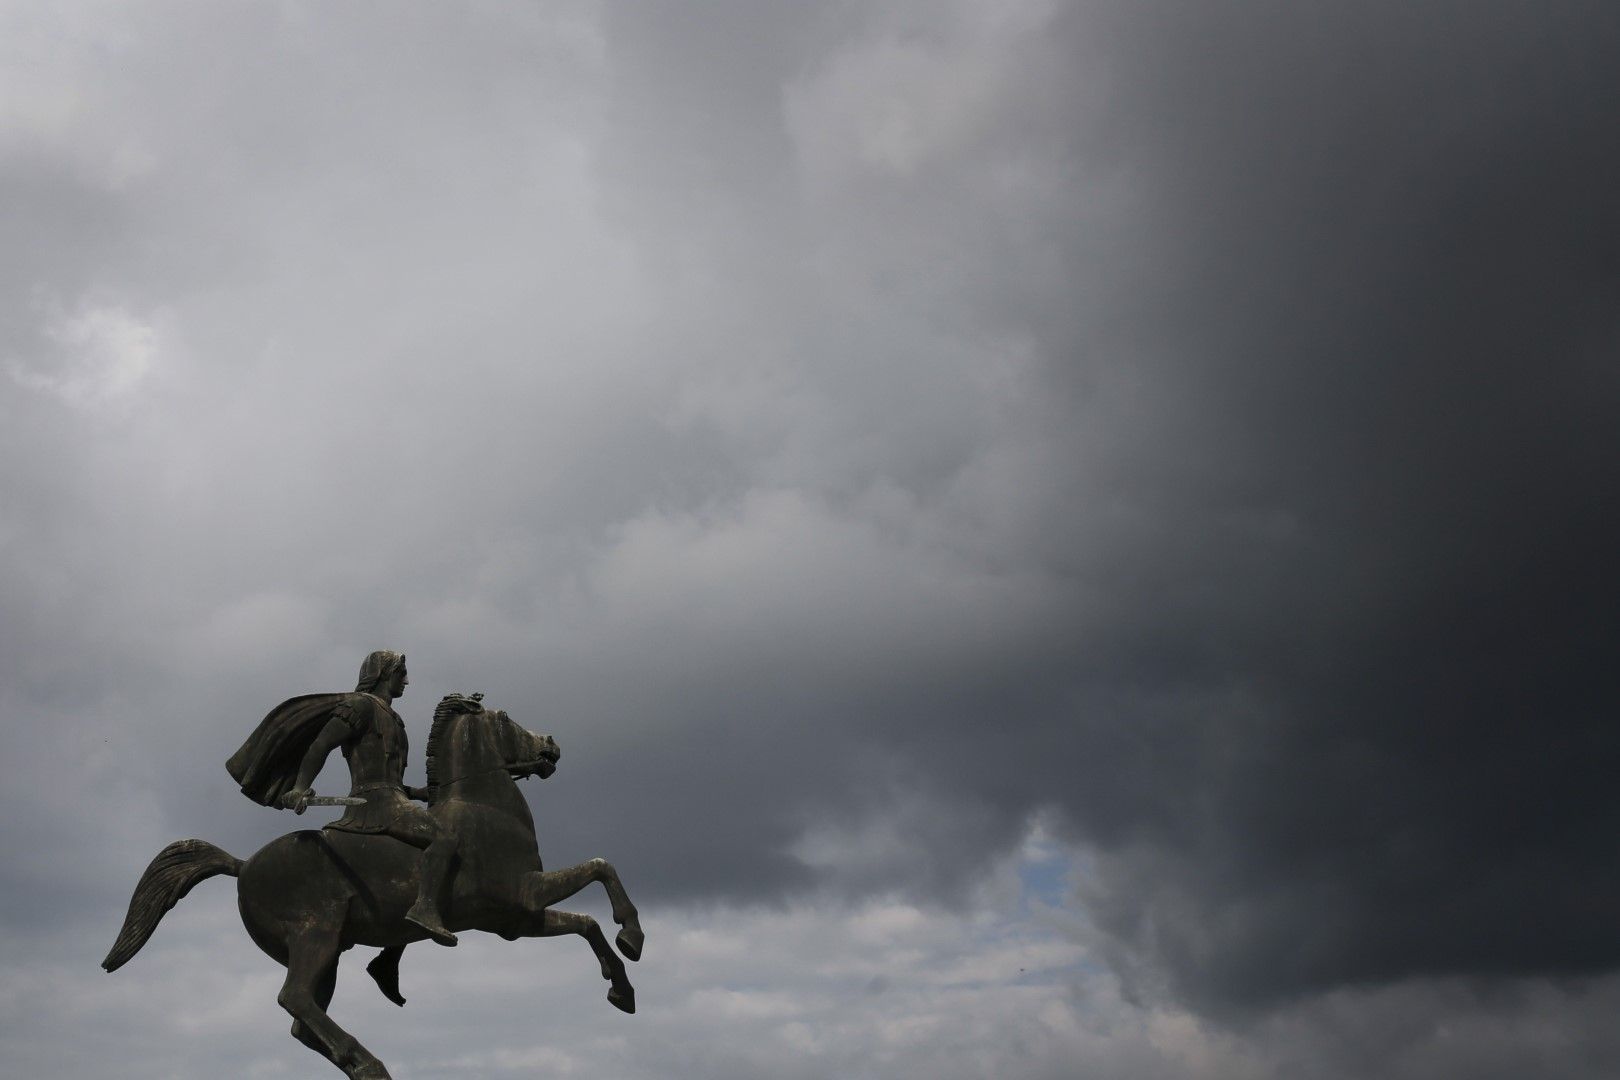 Паметникът на Александър Македонски в Скопие